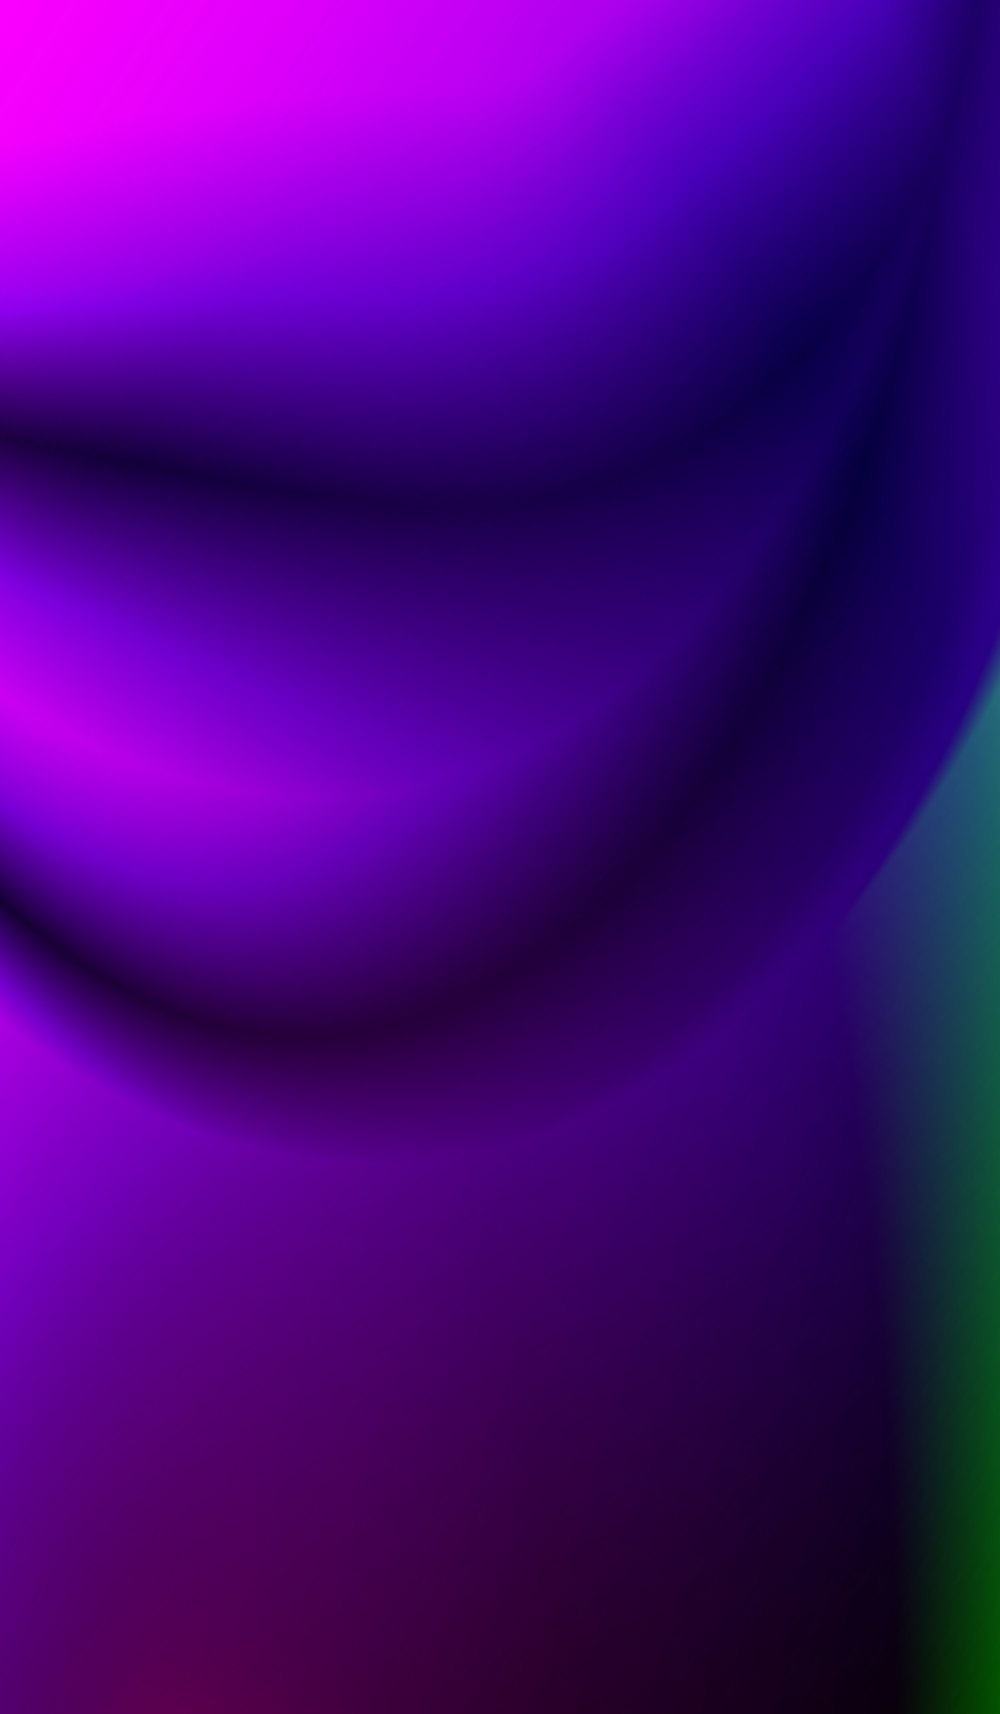 purple light on purple background photo – Free Bright Image on Unsplash